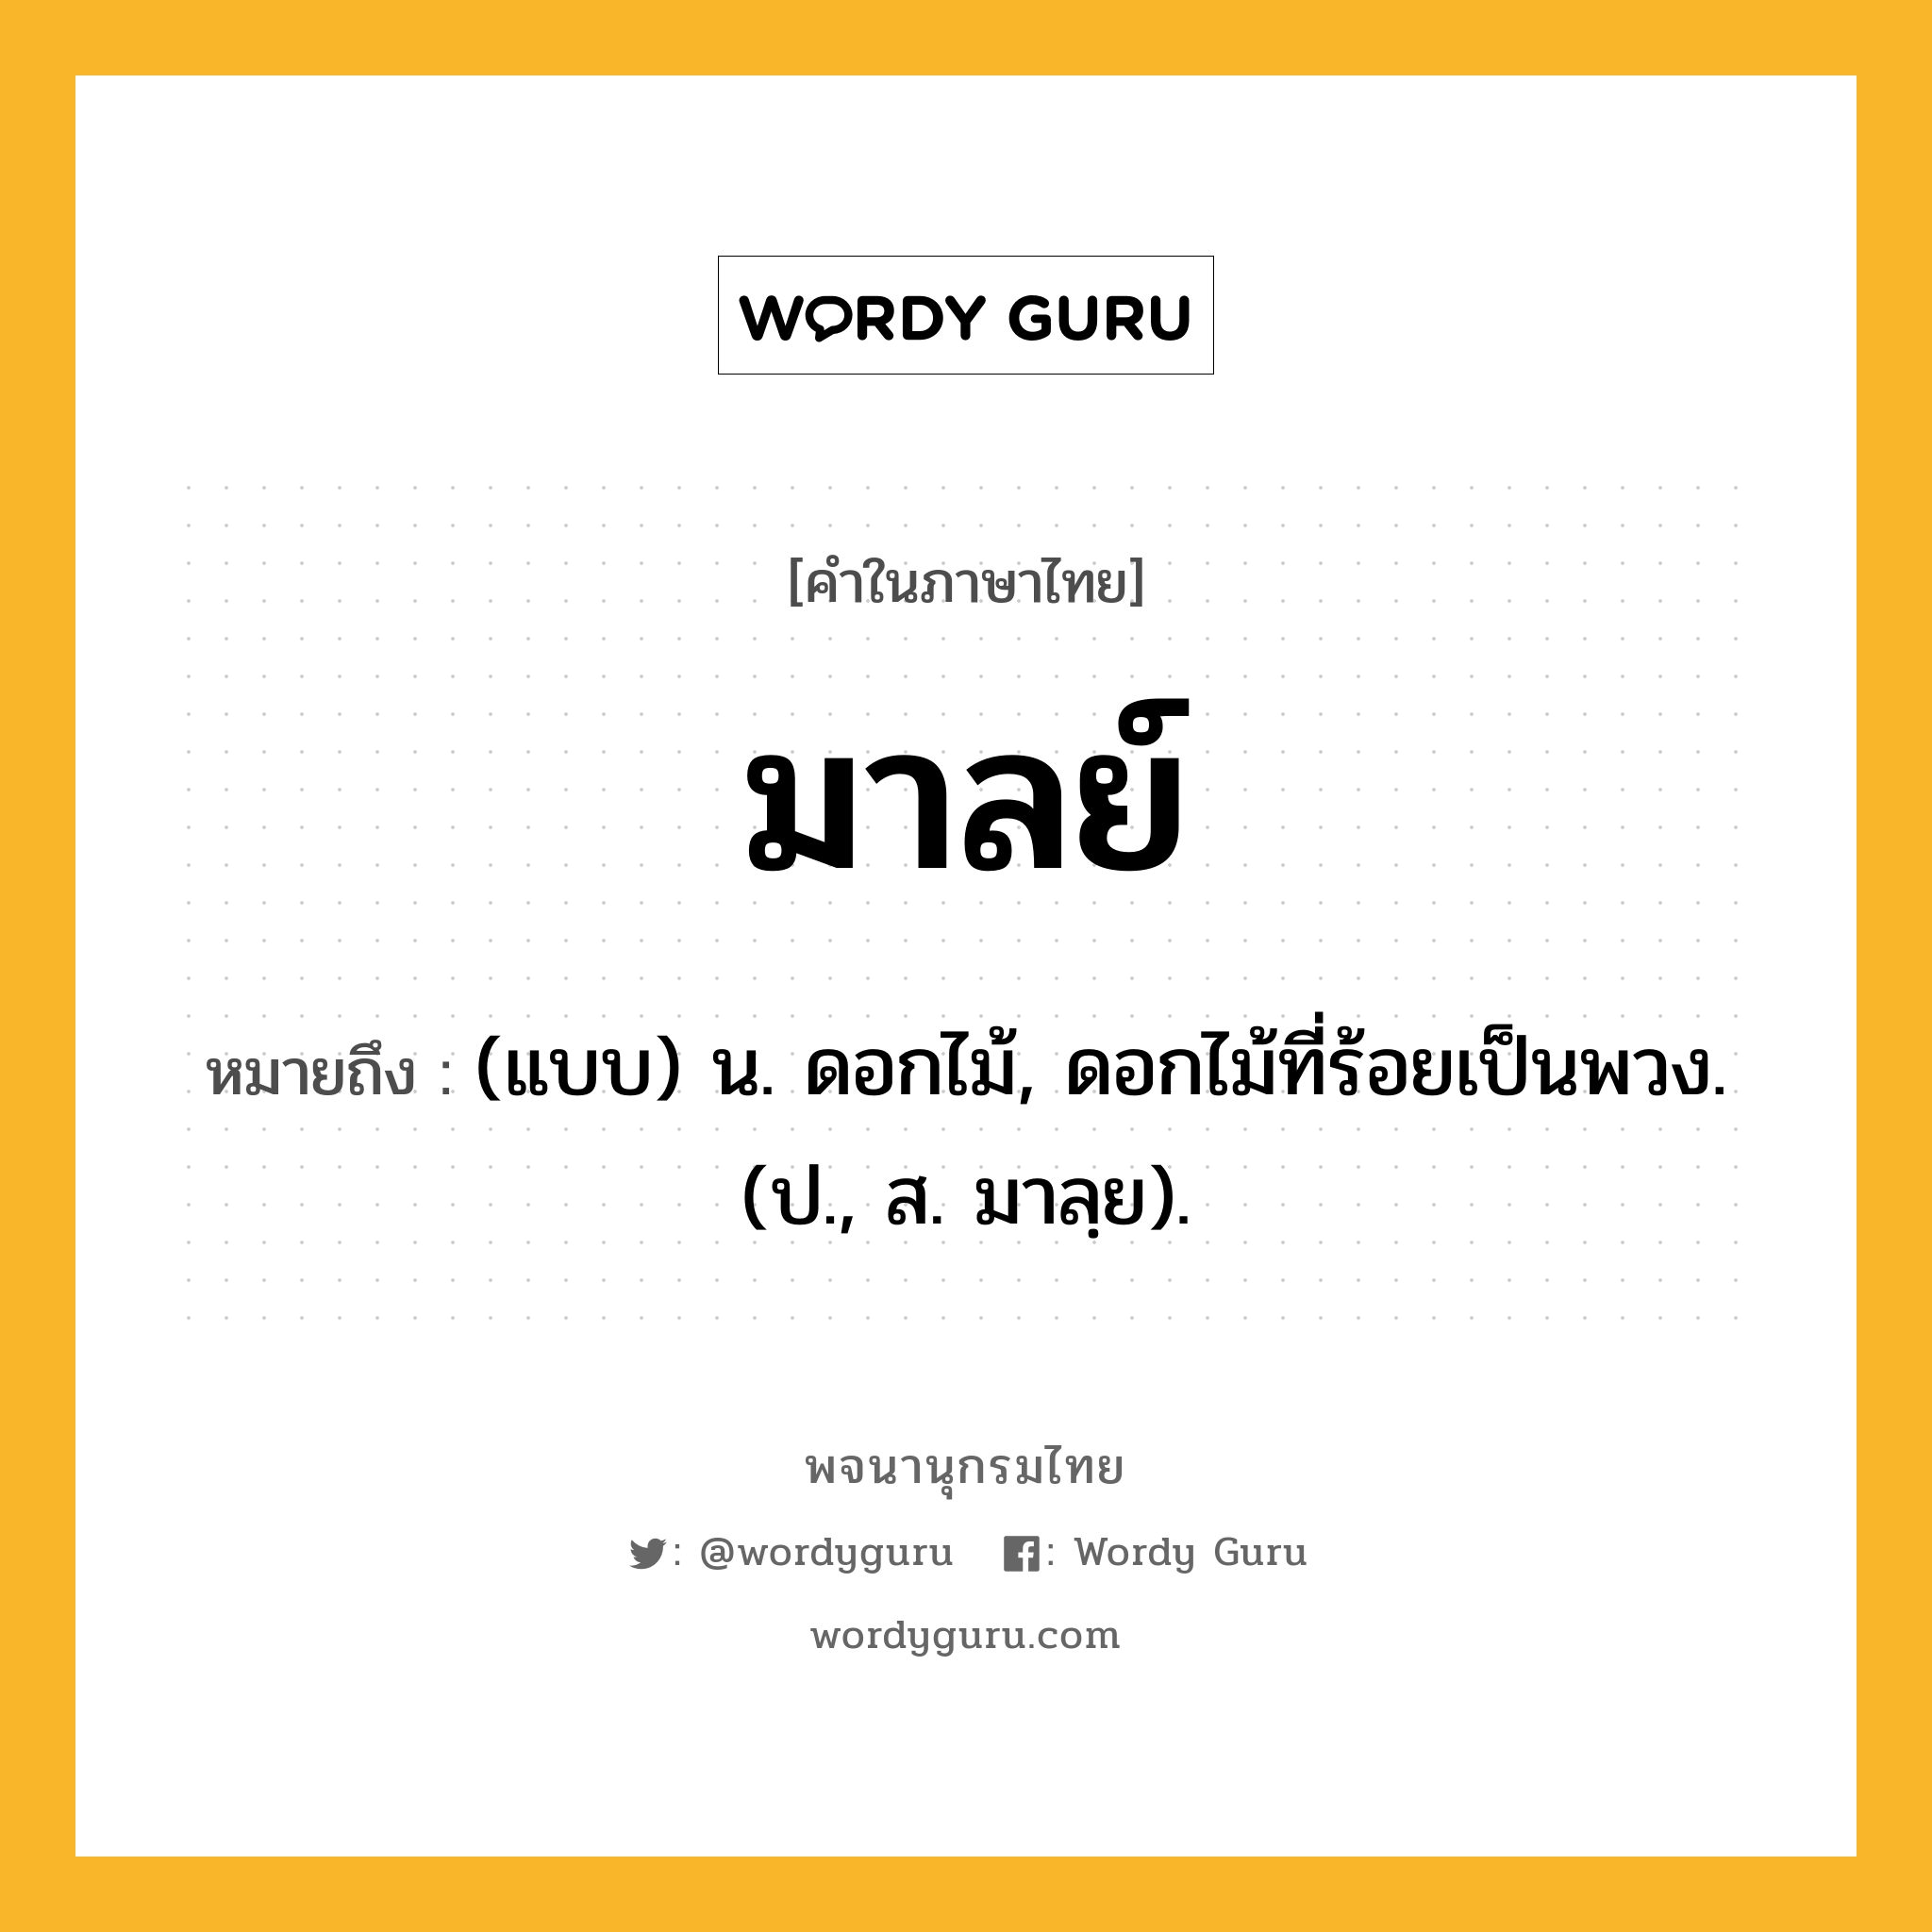 มาลย์ ความหมาย หมายถึงอะไร?, คำในภาษาไทย มาลย์ หมายถึง (แบบ) น. ดอกไม้, ดอกไม้ที่ร้อยเป็นพวง. (ป., ส. มาลฺย).